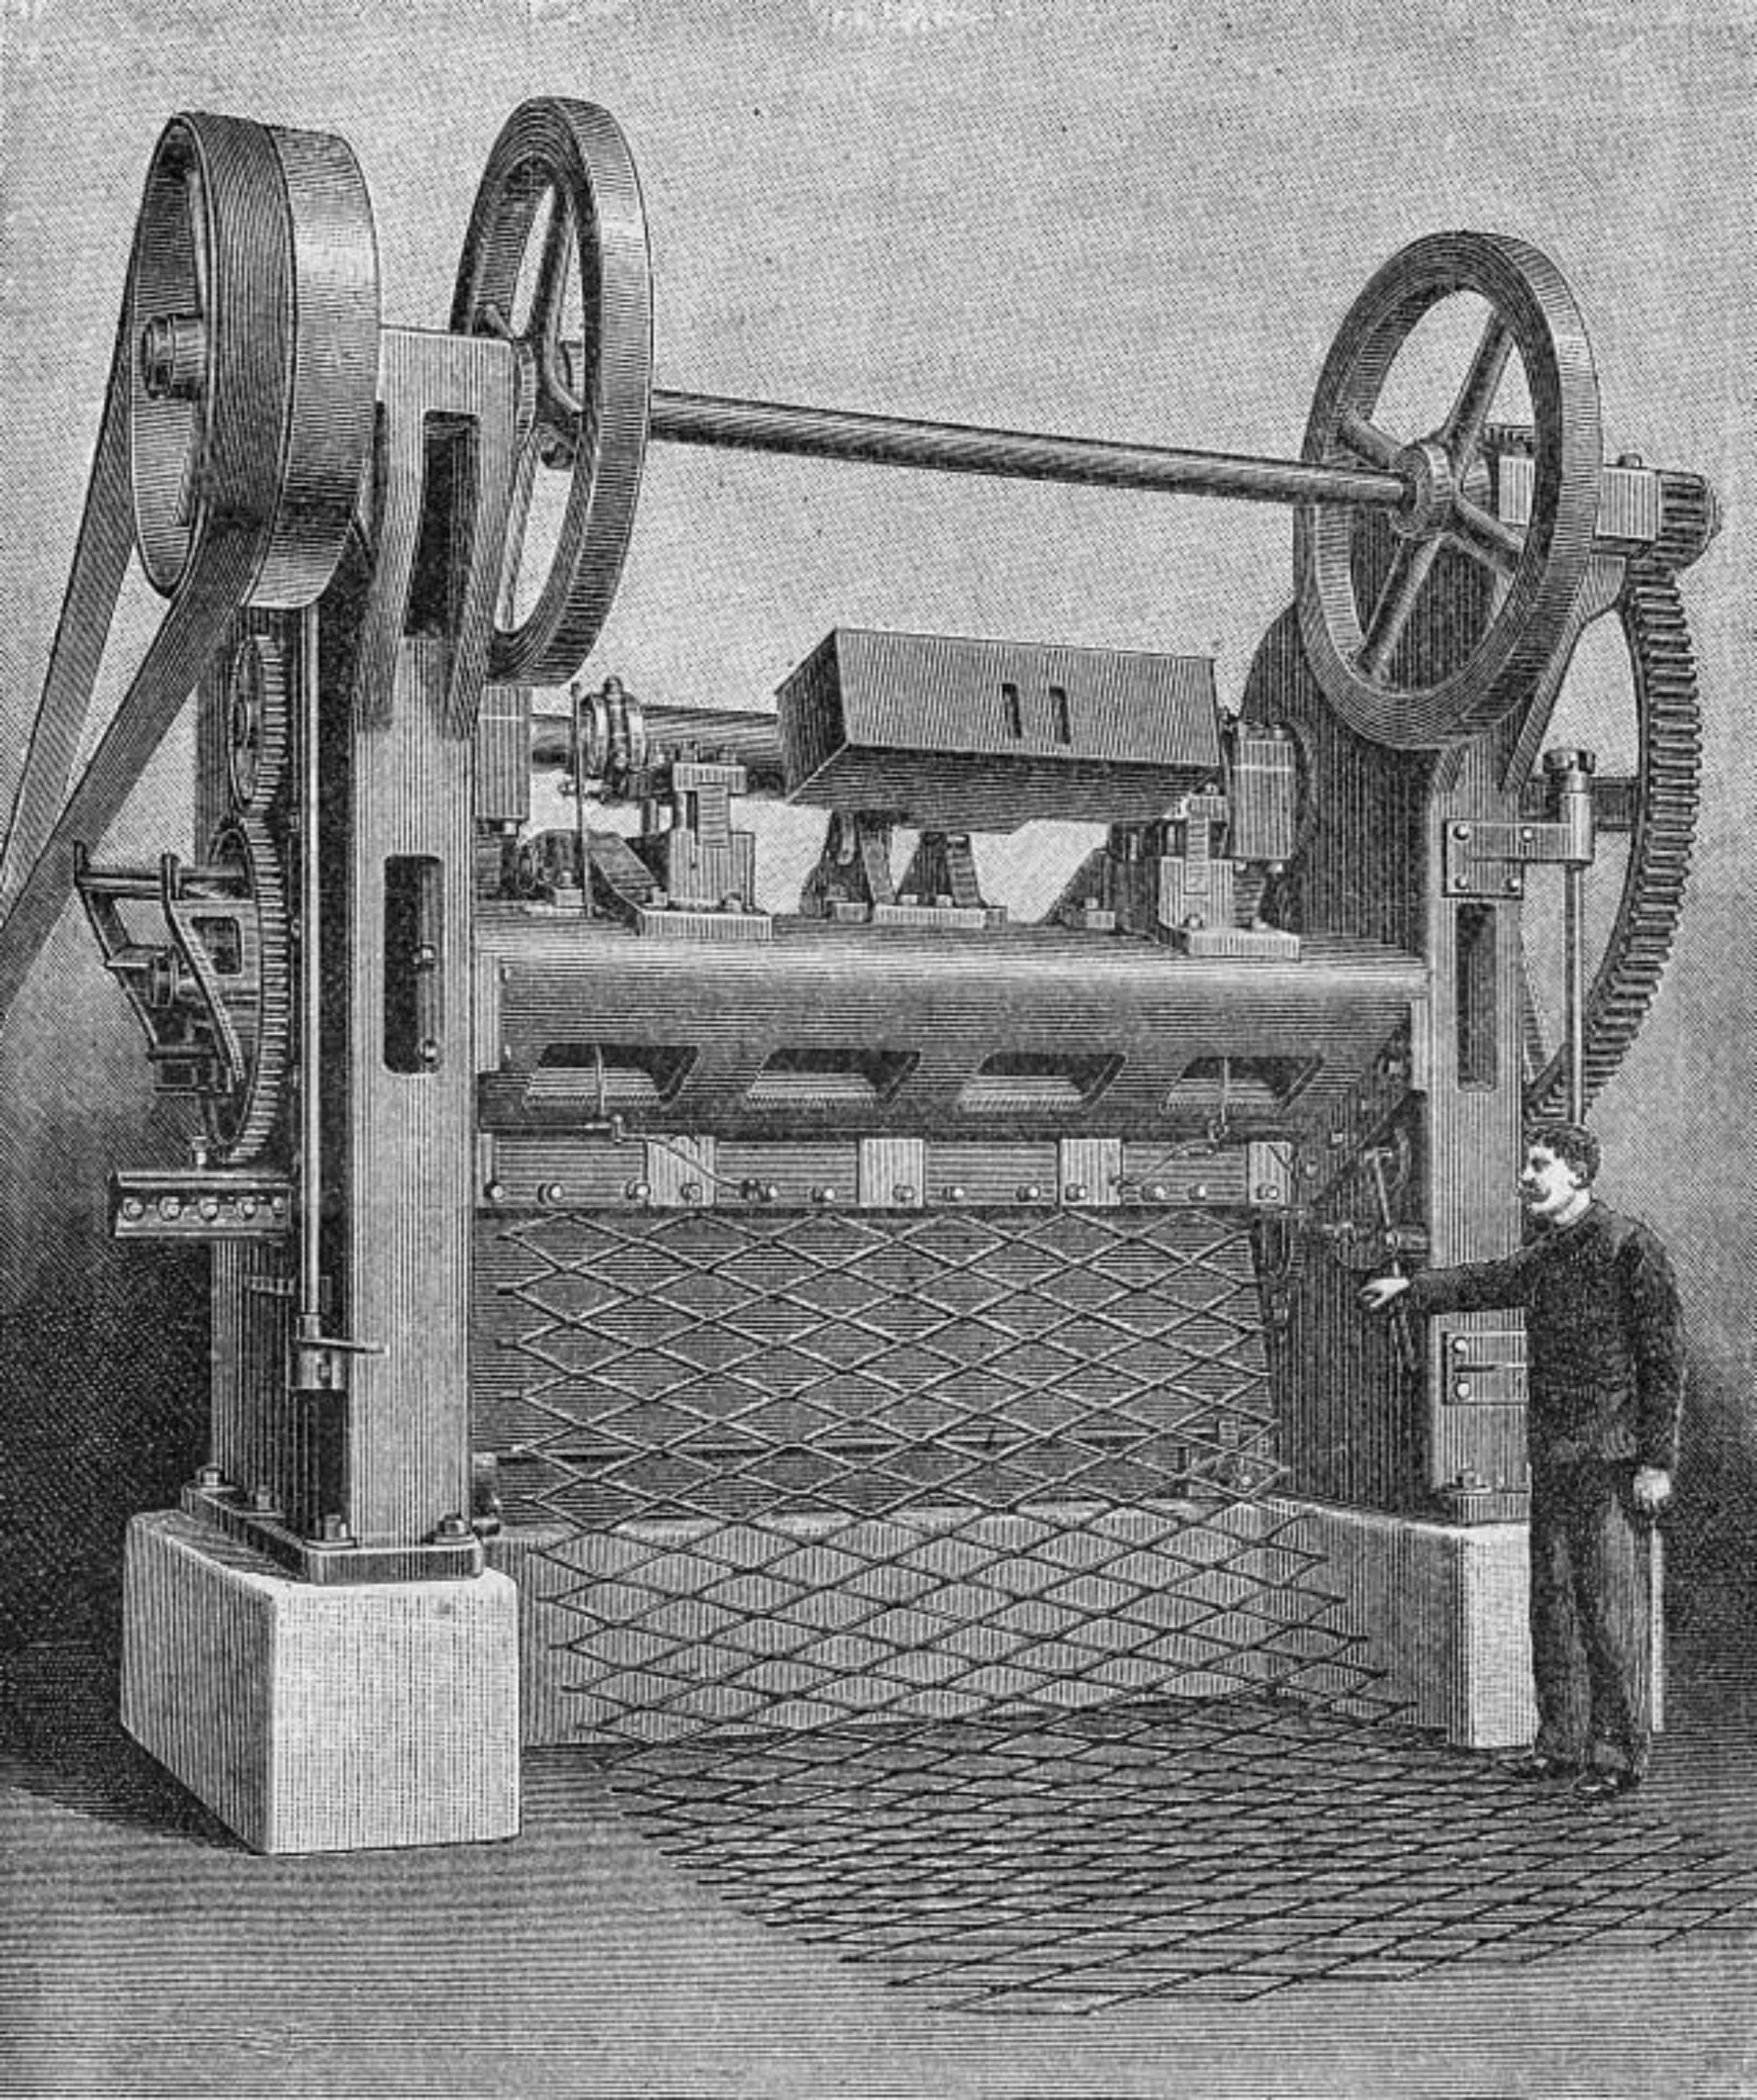 Primera Maquina para realizar el metal deployé. Berlin 1899